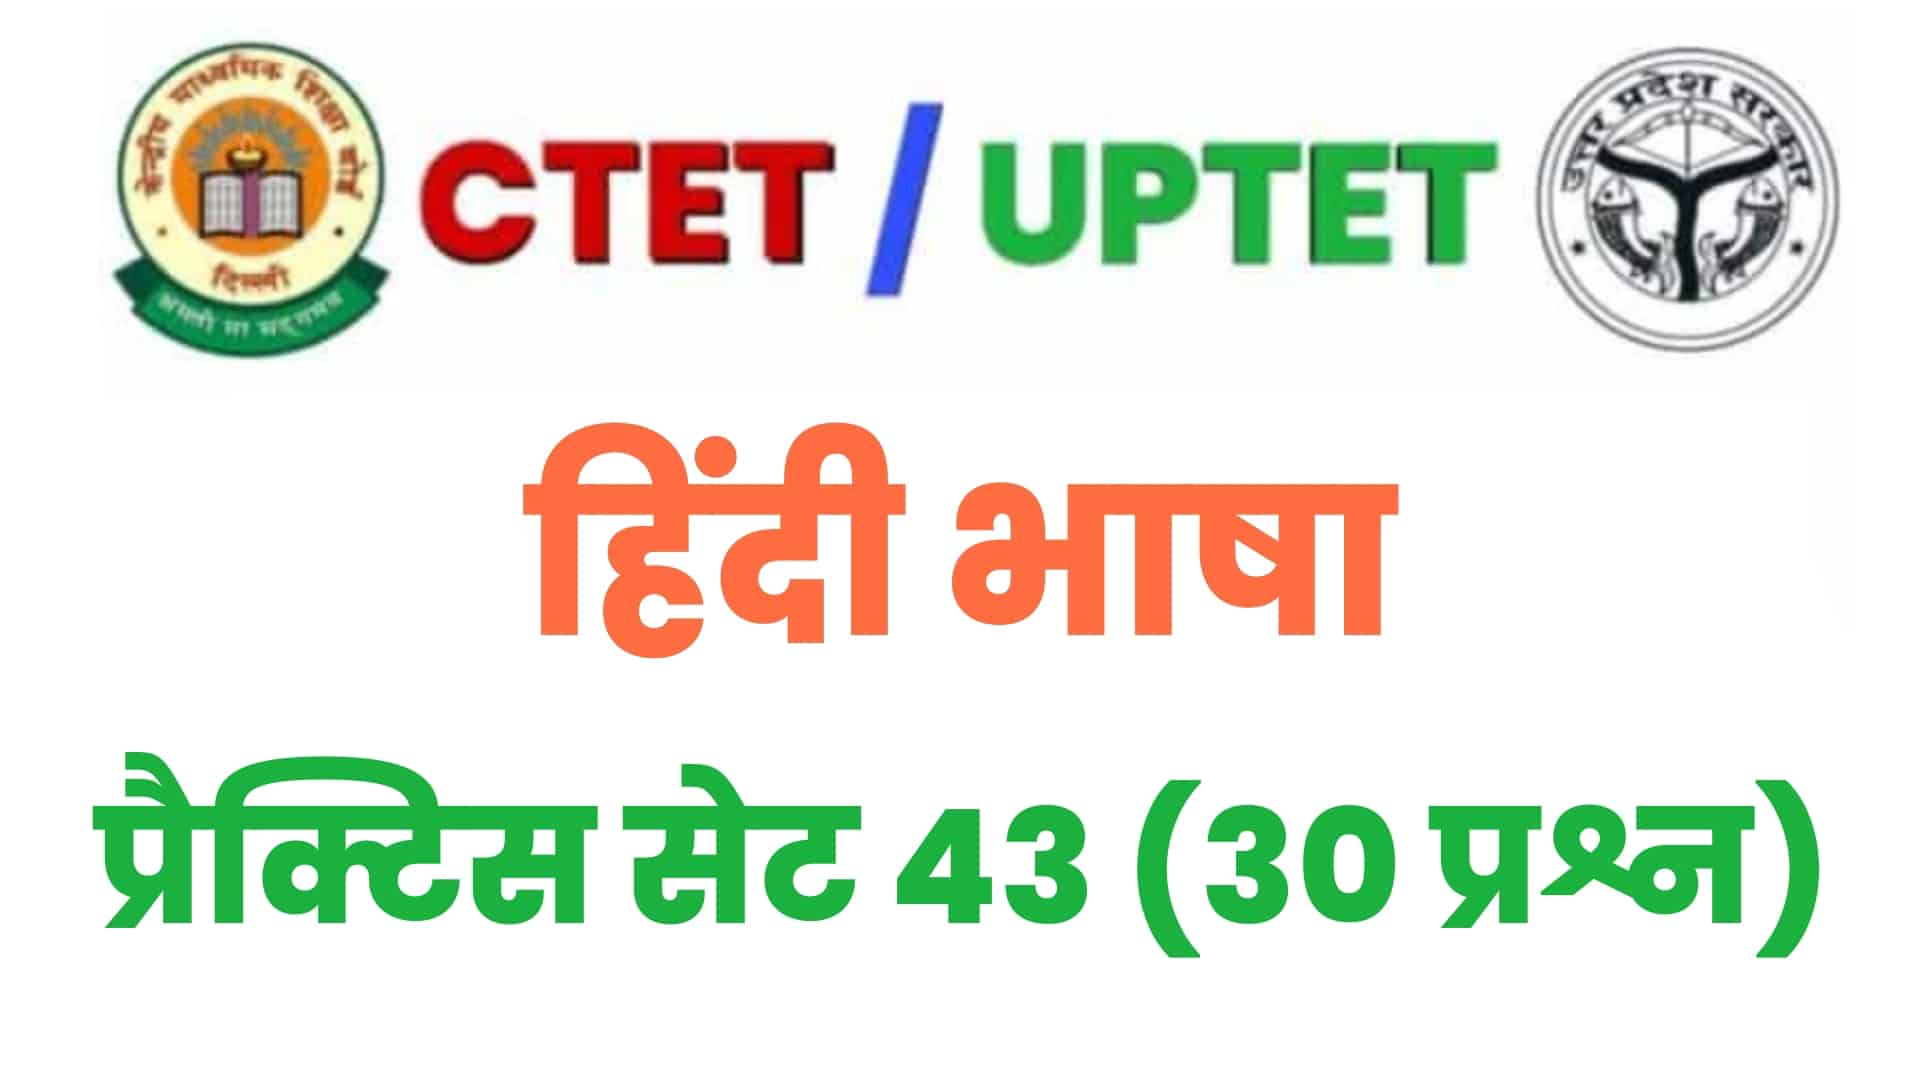 UPTET/CTET  हिंदी भाषा प्रैक्टिस सेट 43 : परीक्षा में शामिल होने से पहले इन 30 महत्वपूर्ण प्रश्नों का करें अध्ययन